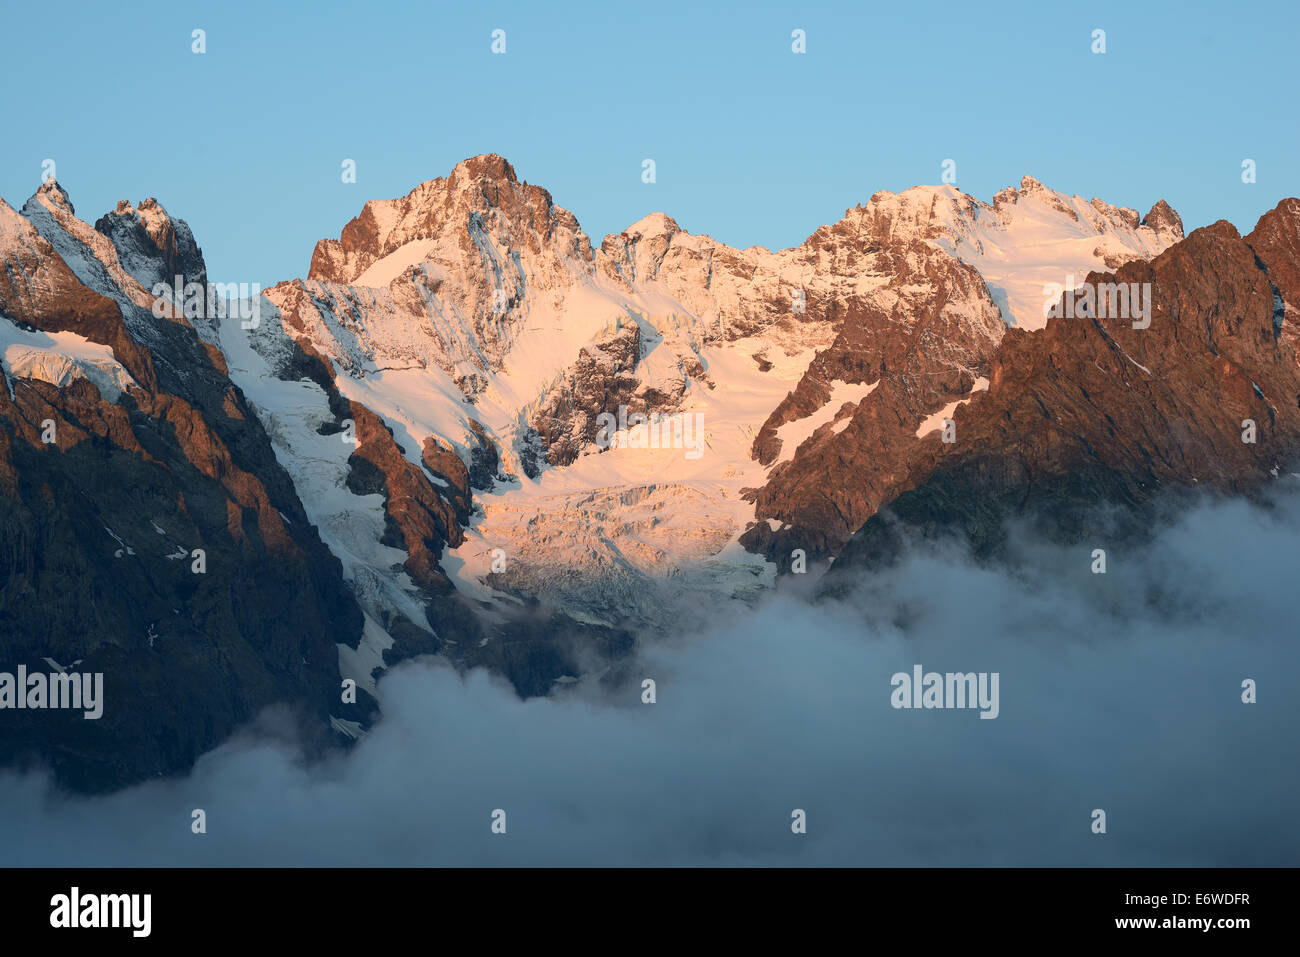 Pic Gaspard alto 3883 metri sulla sinistra e la Meije alta 3984 metri sulla destra. Parco Nazionale degli Ecrins, Hautes-Alpes, Francia. Foto Stock